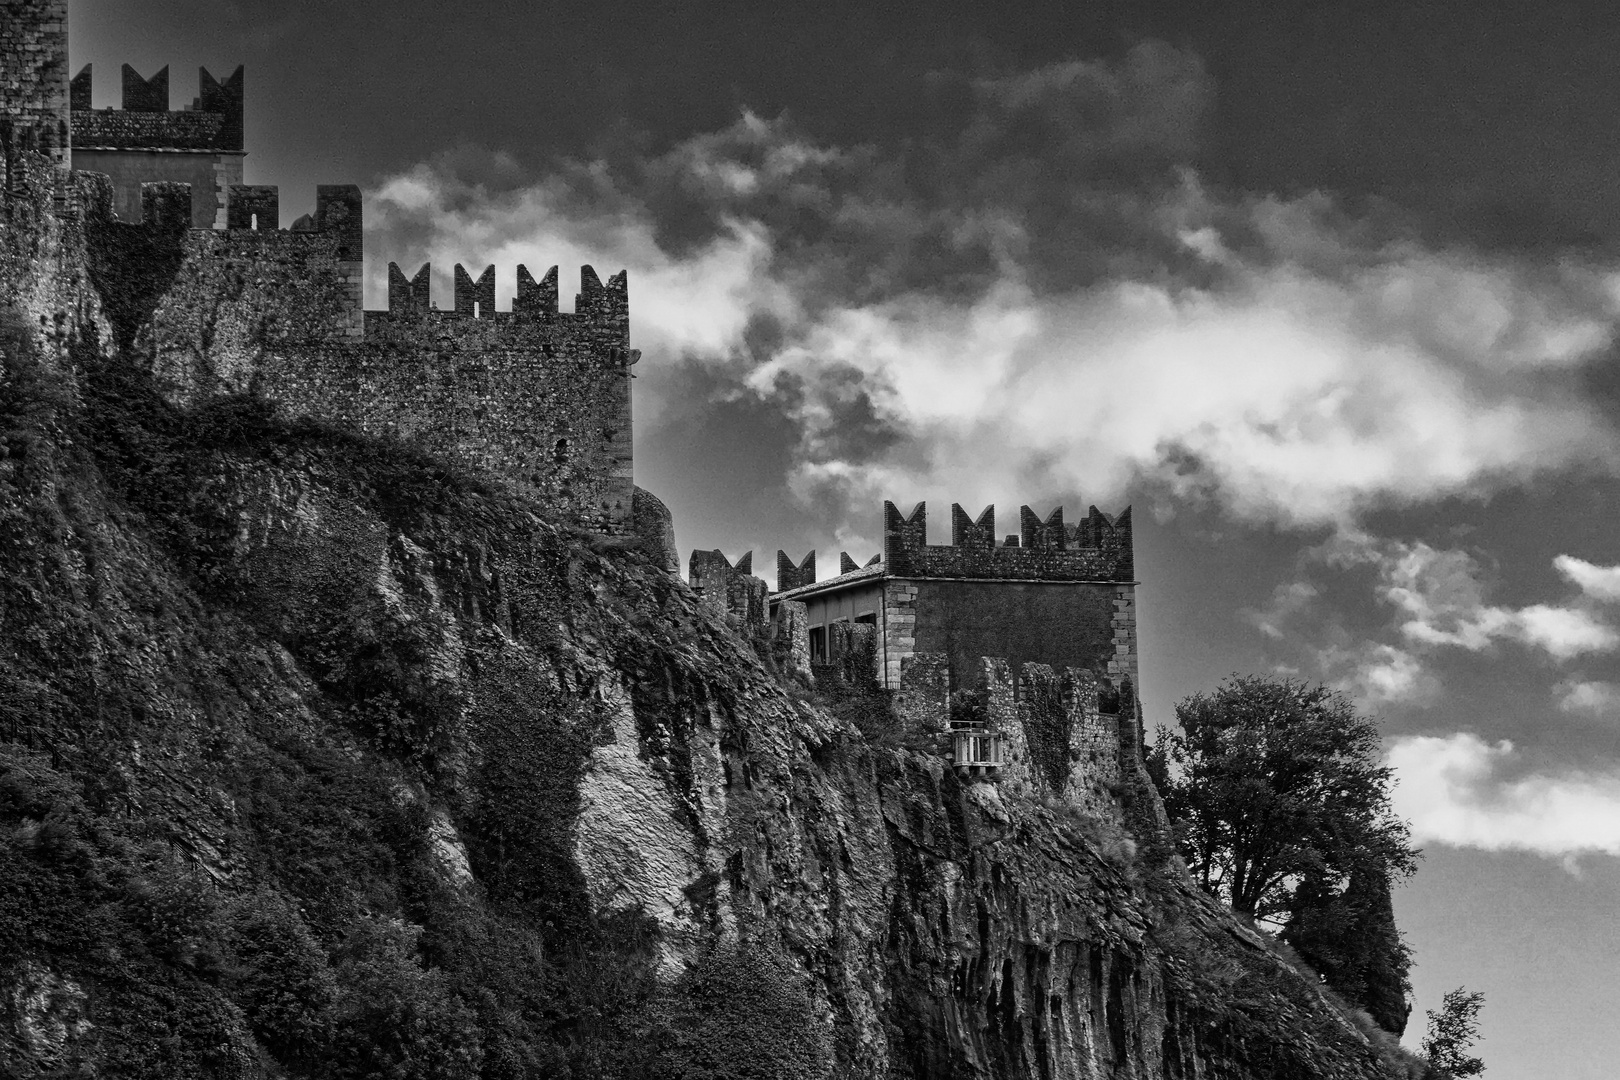 Burg in Malcesine